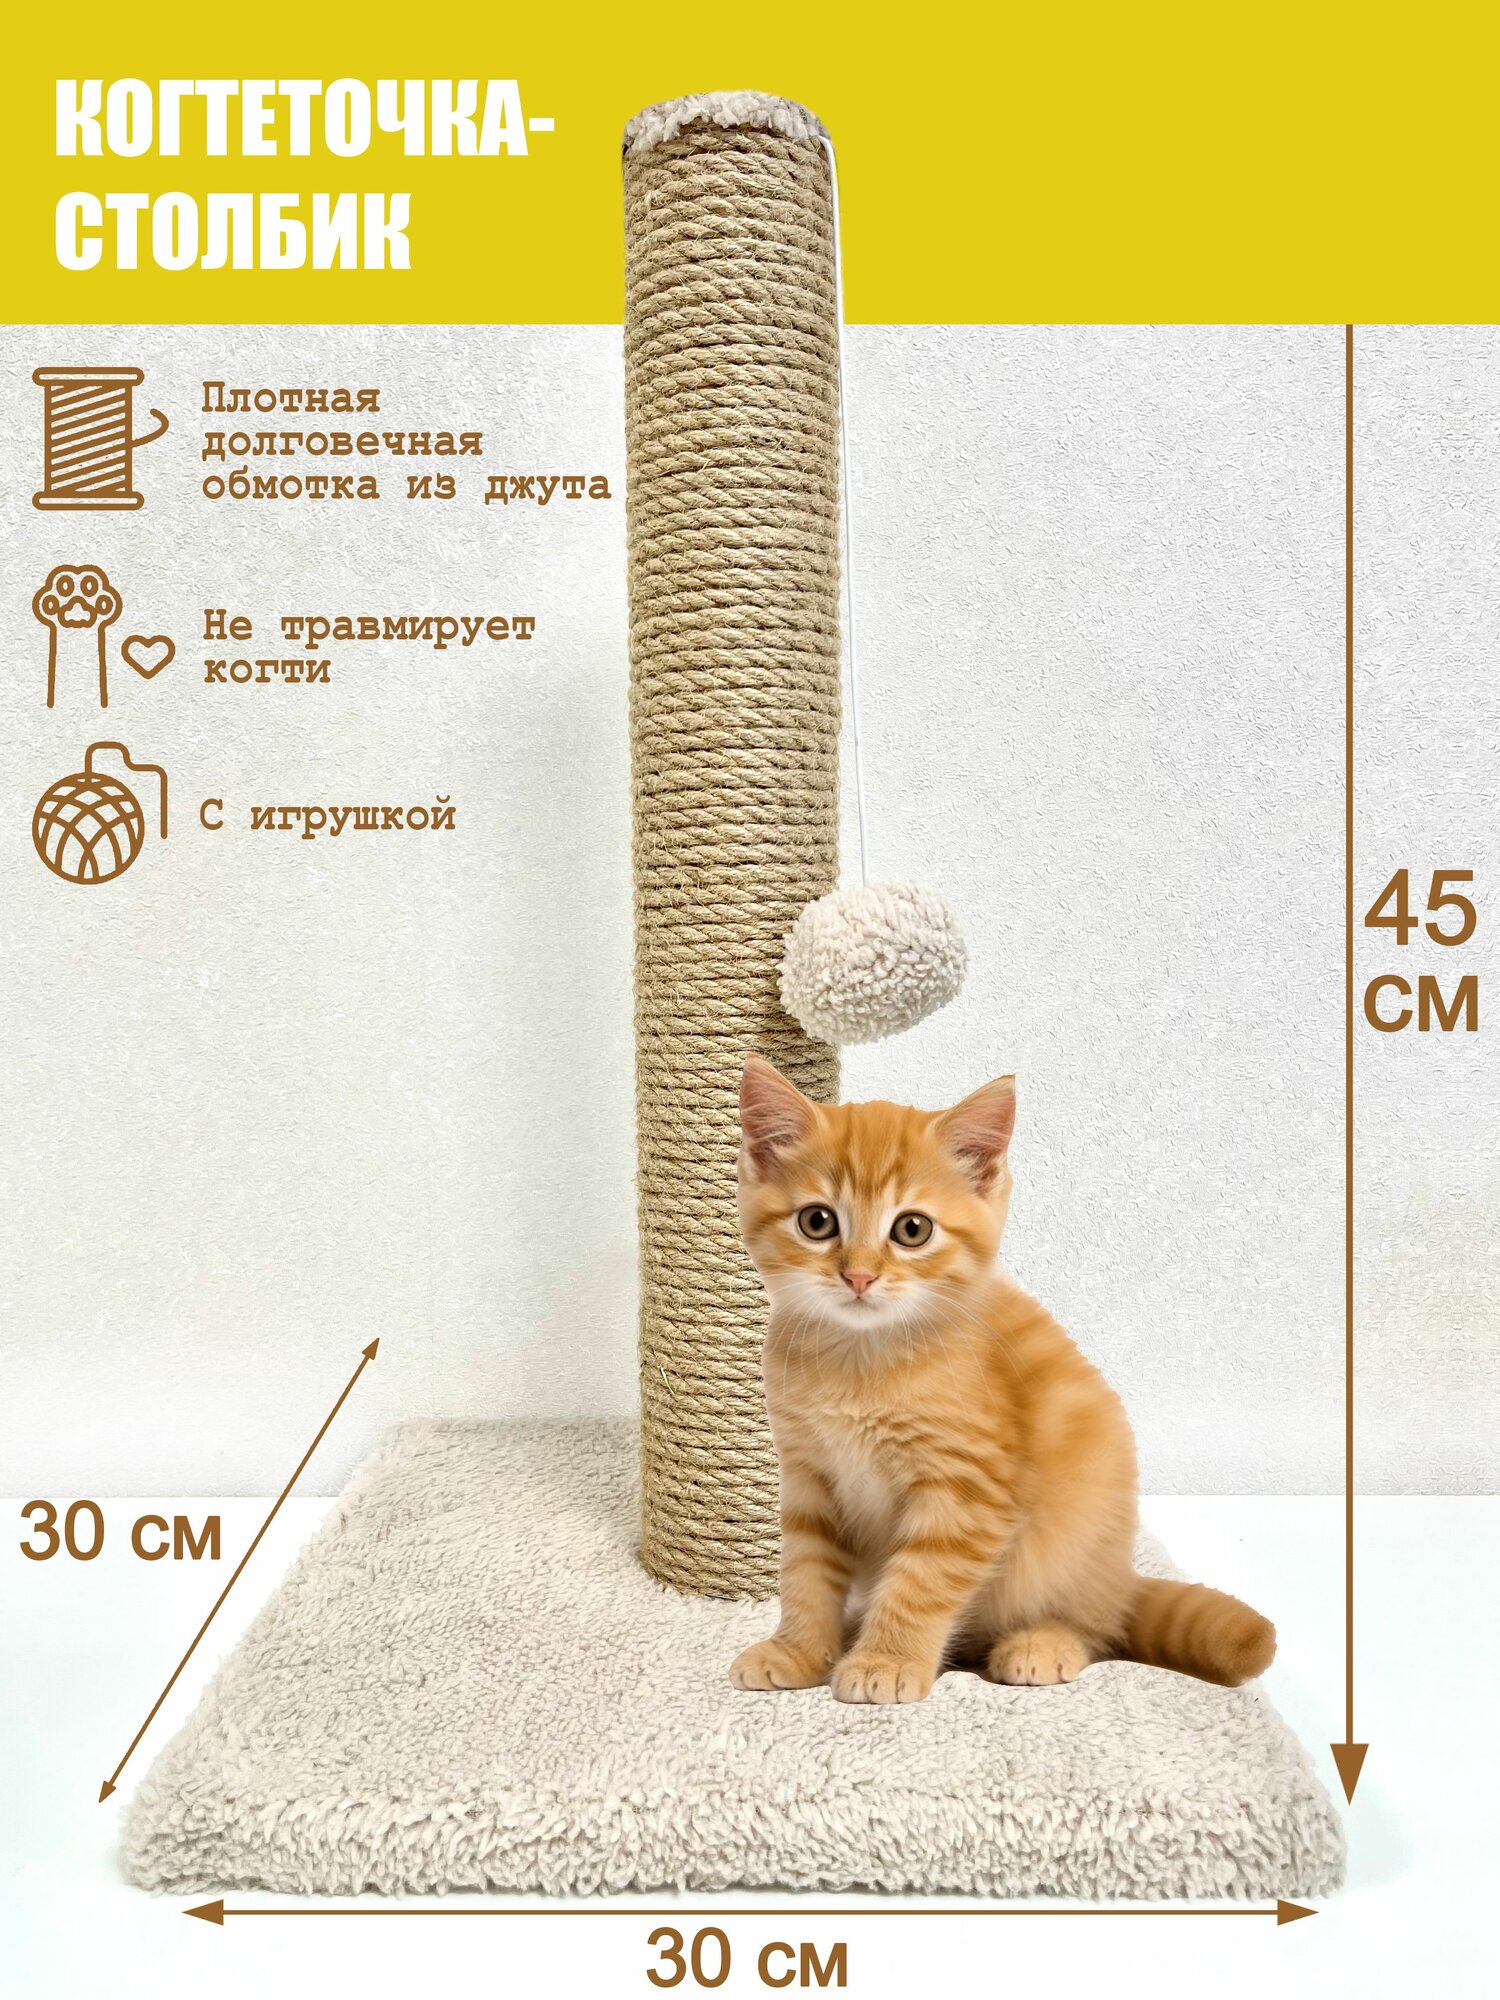 Когтеточка-столбик джутовая 30х30х45 см с игрушкой для кошек (цвет бежевый)